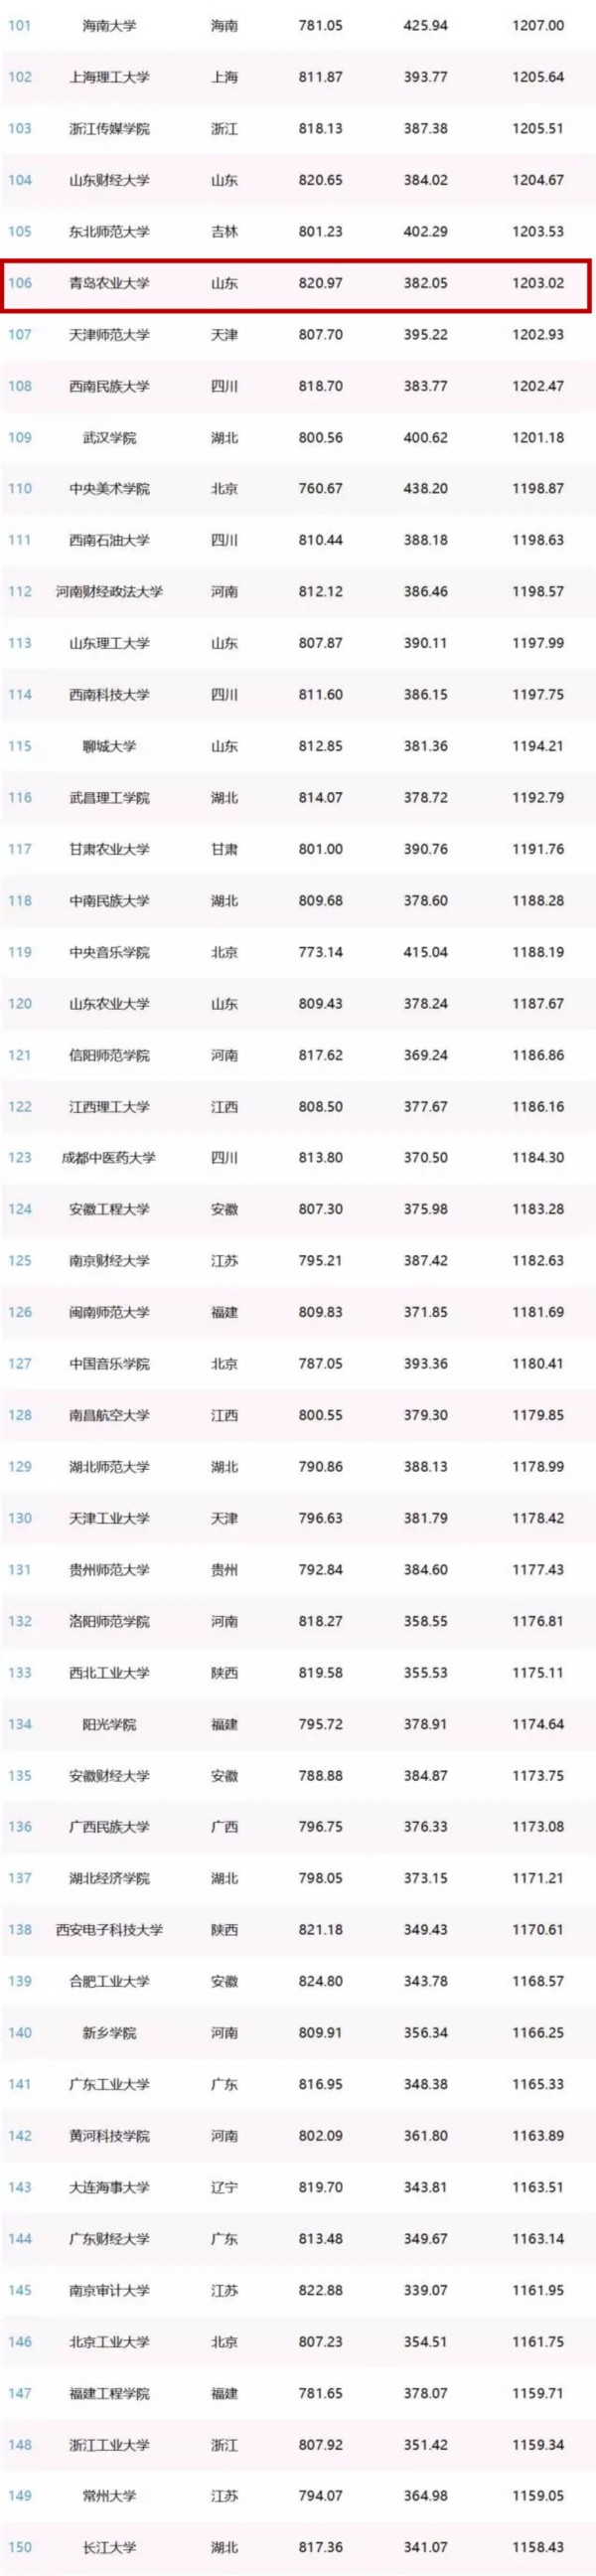 中國網紅高校排行榜發佈 青島五校上榜